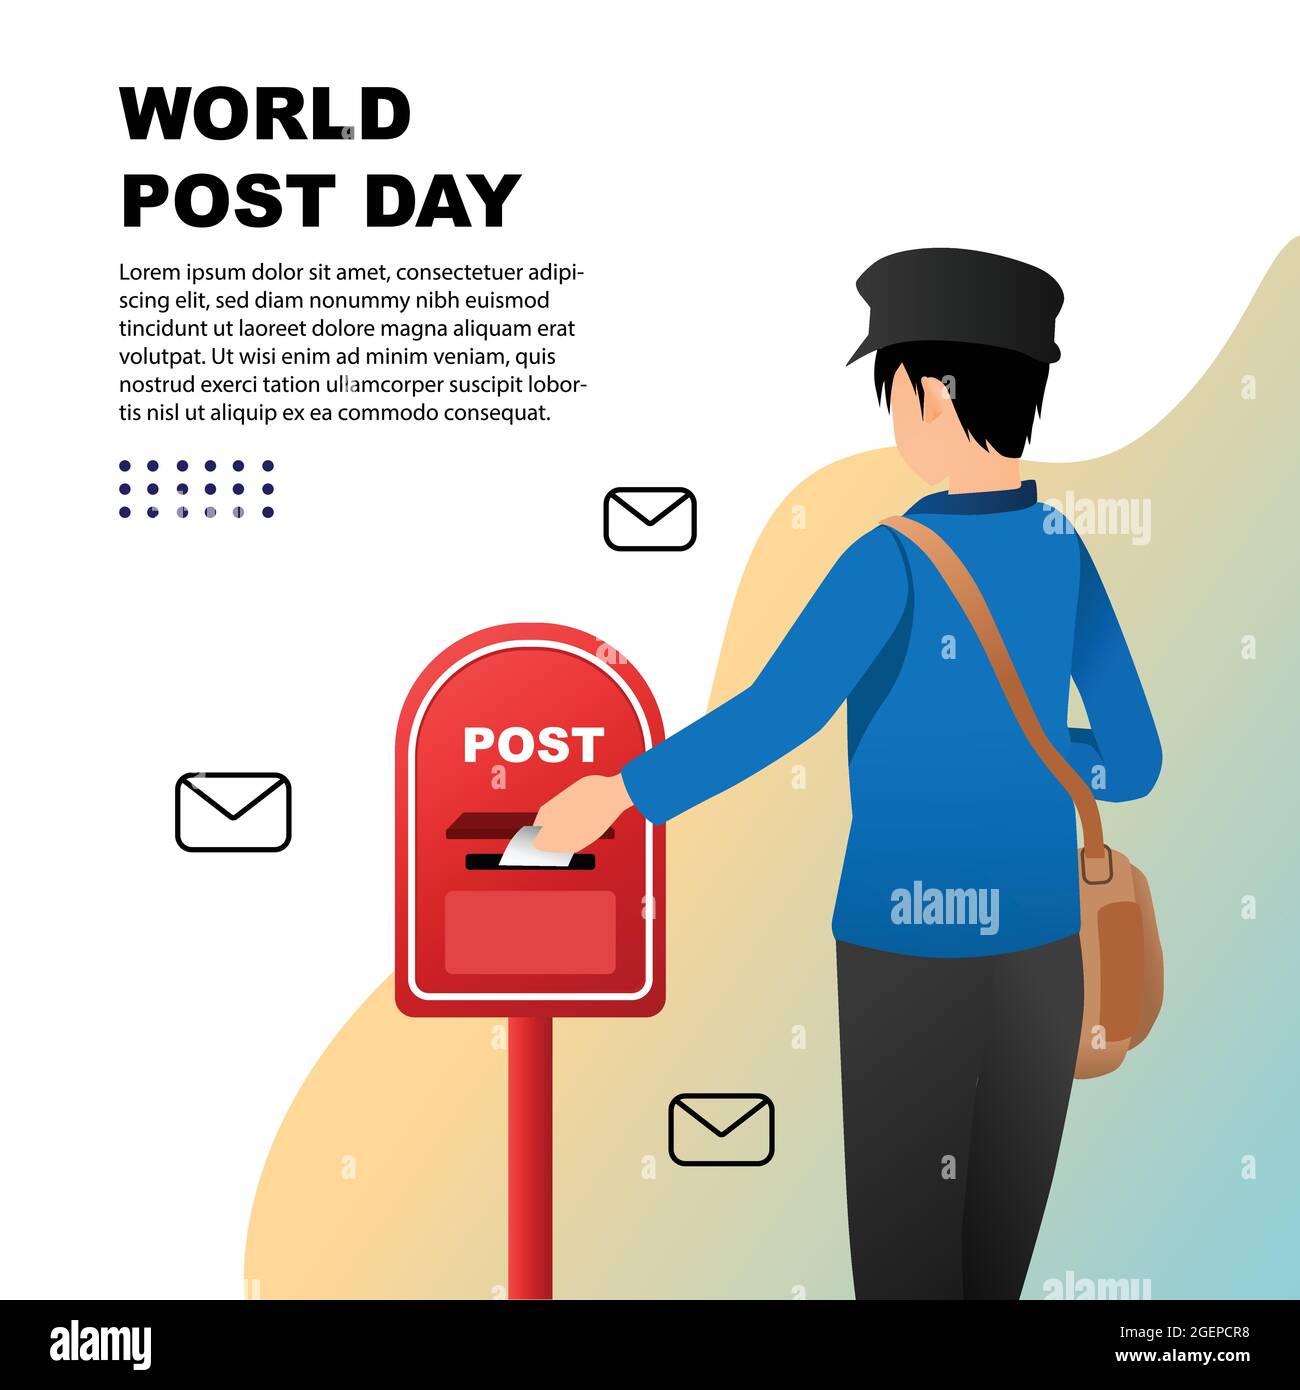 Welt Post Day Vektor Illustration modernes flaches Design Stock Vektor